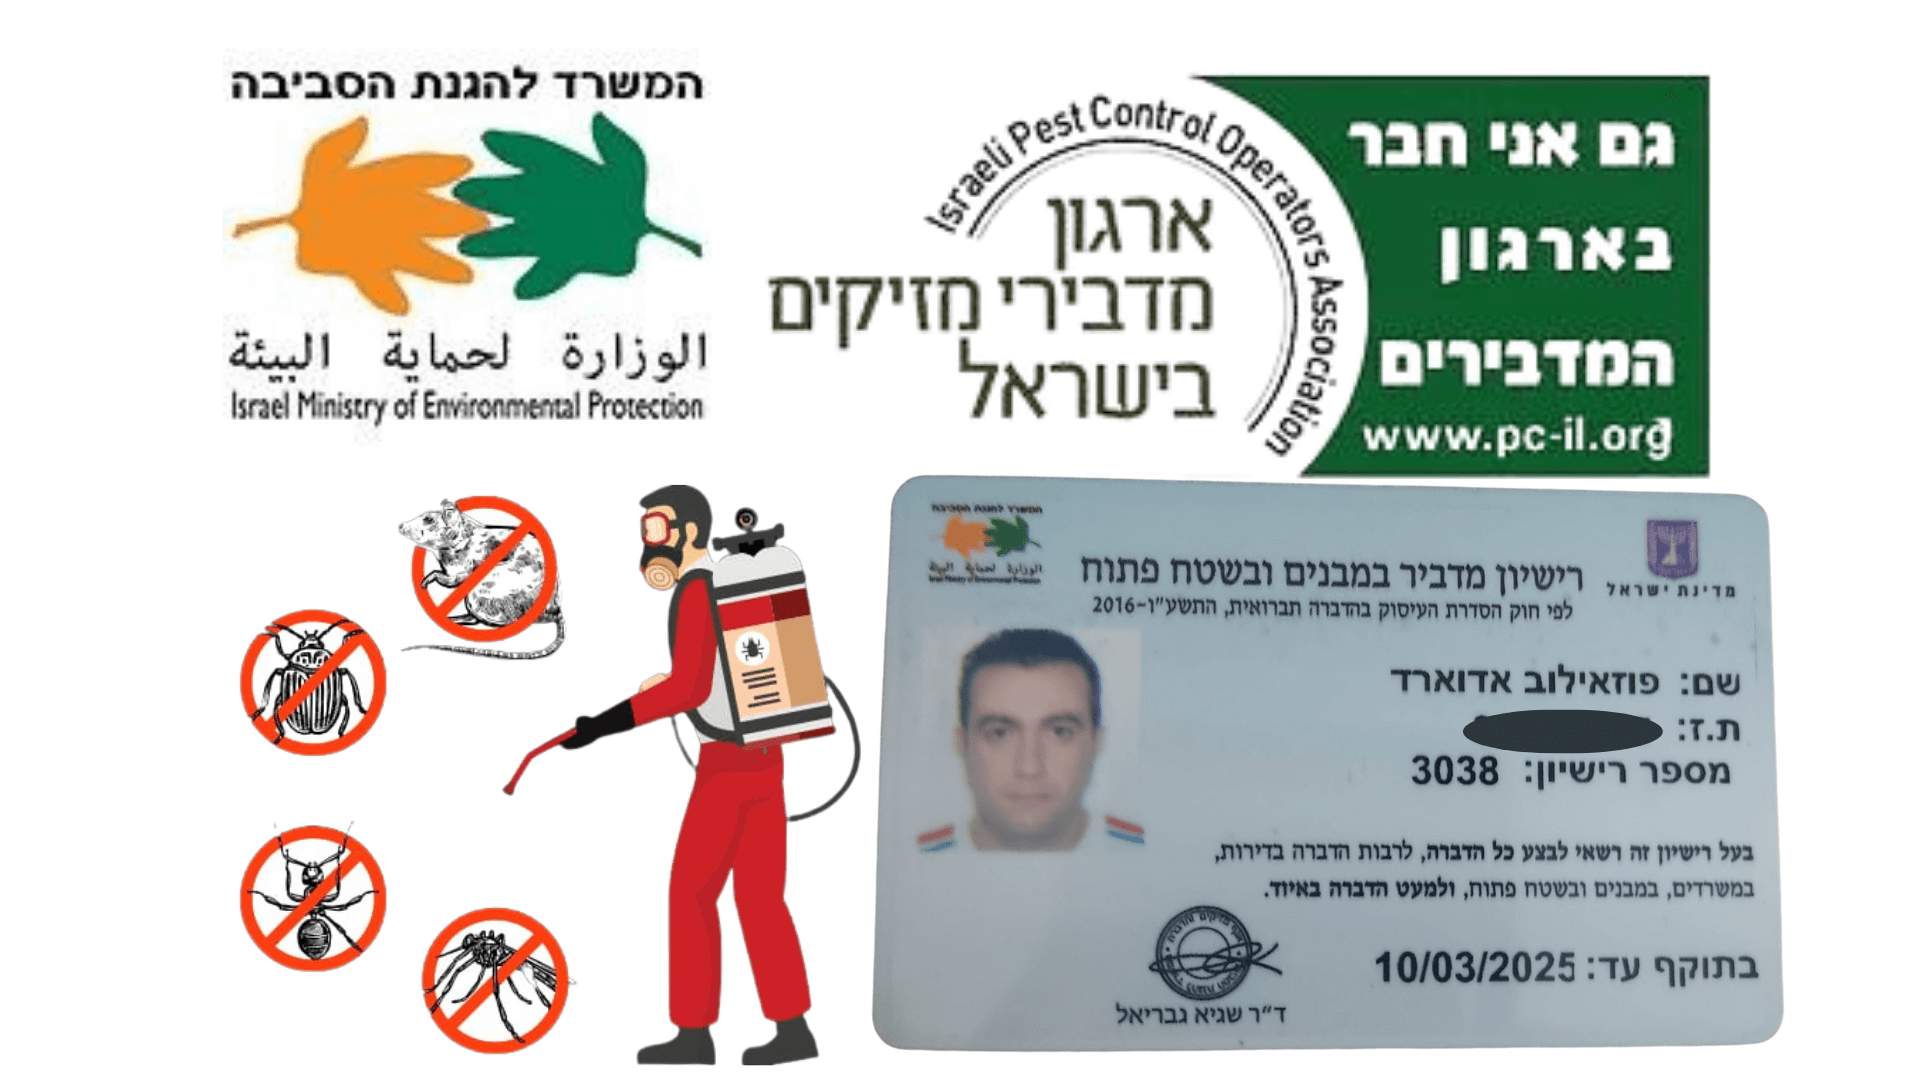 רשיון הדברה עם לוגו של ארגון מדבירי מזיקים בישראל ומשרד להגנת סביבה